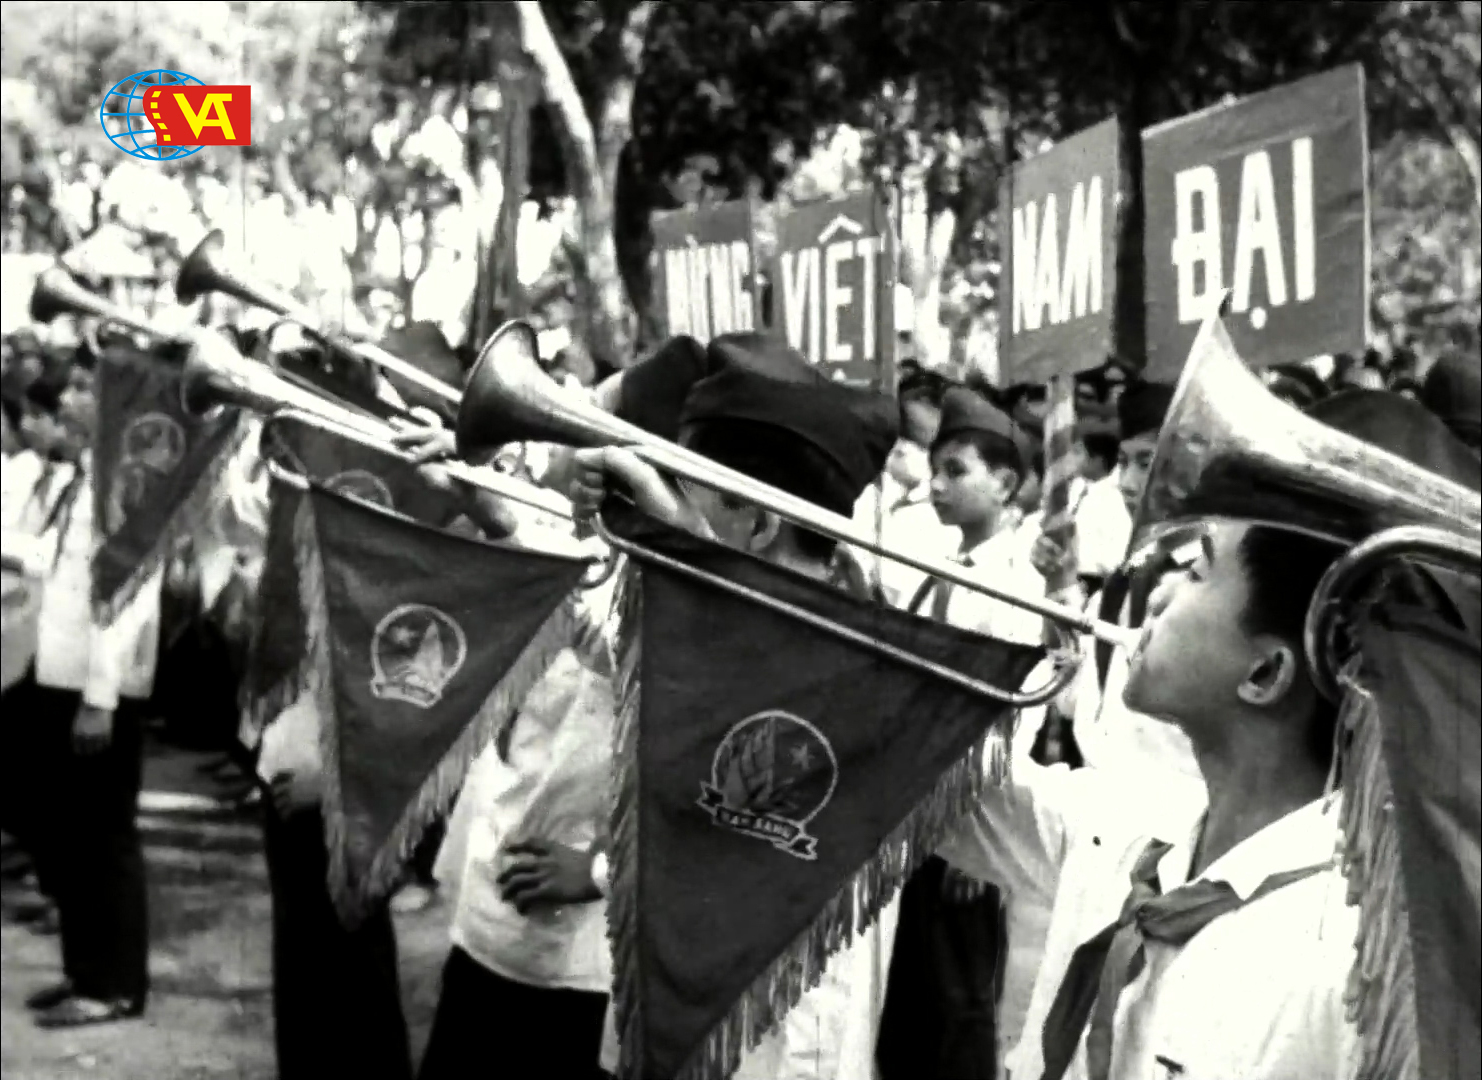 Ngày Thành lập Đoàn Thanh Niên Cộng Sản Hồ Chí Minh